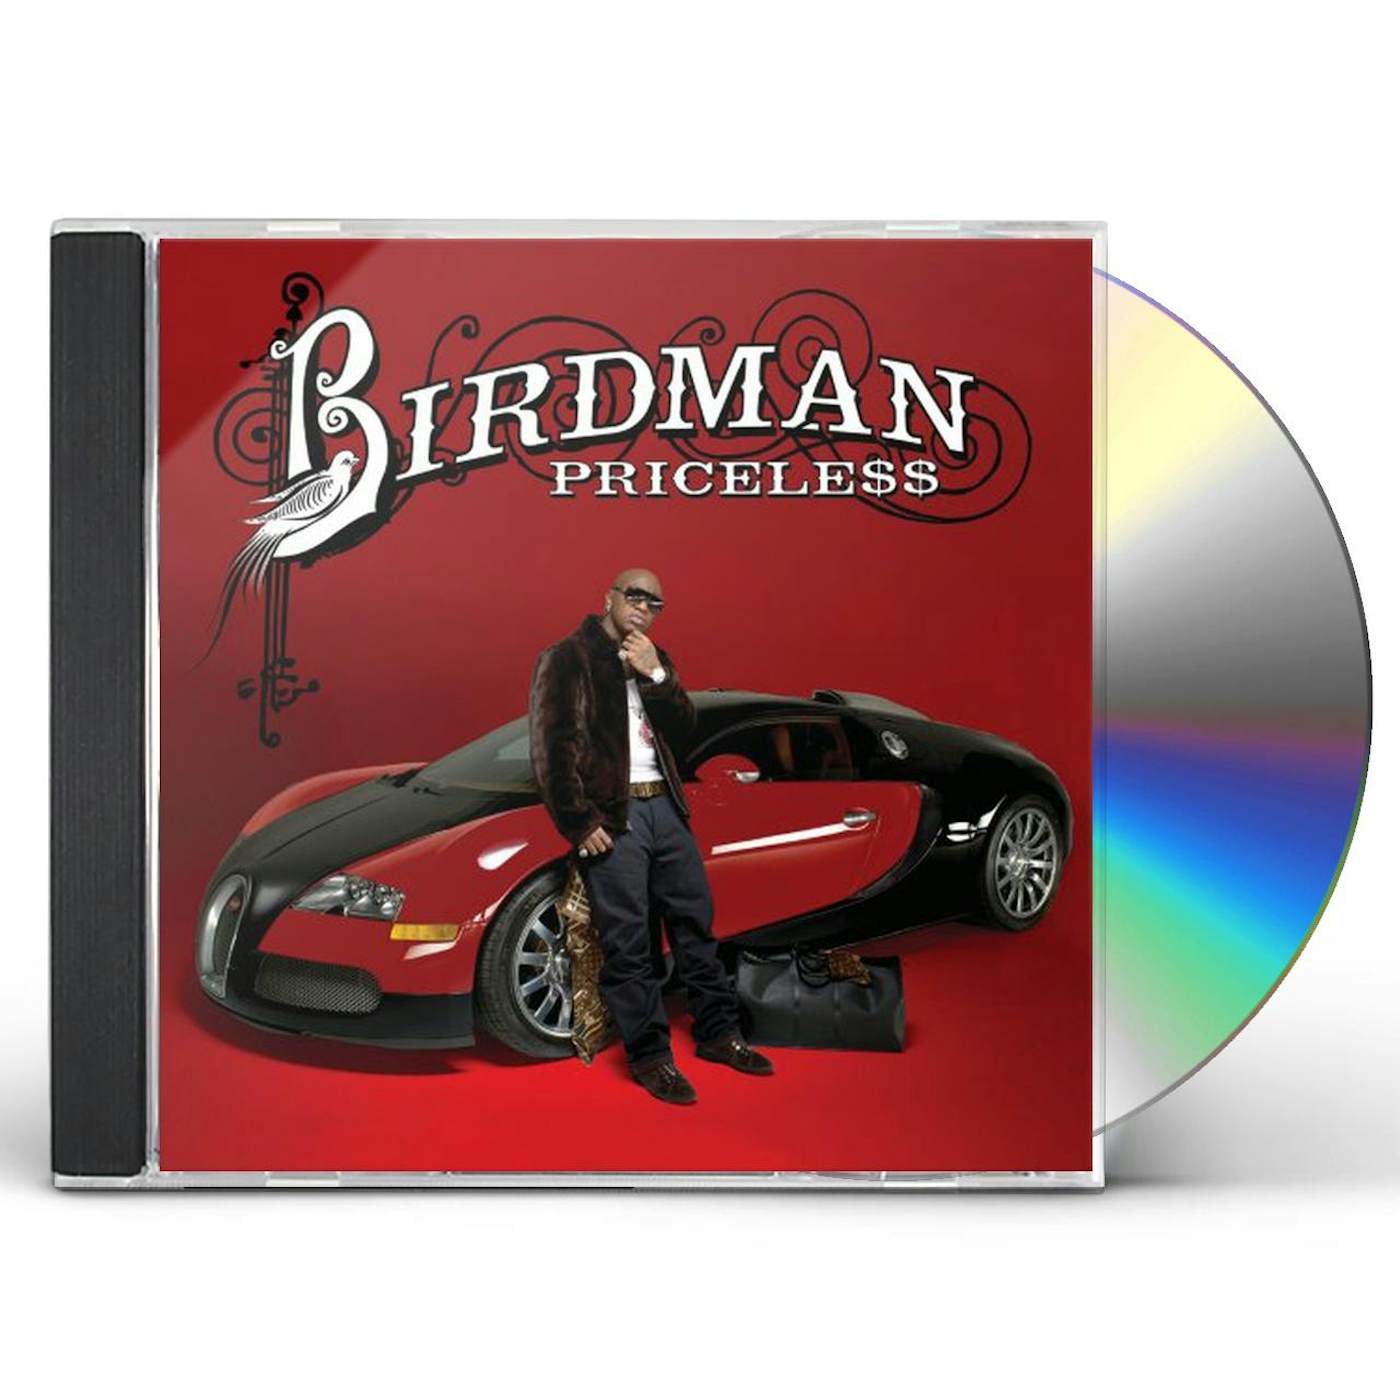 Birdman PRICELE$$ CD